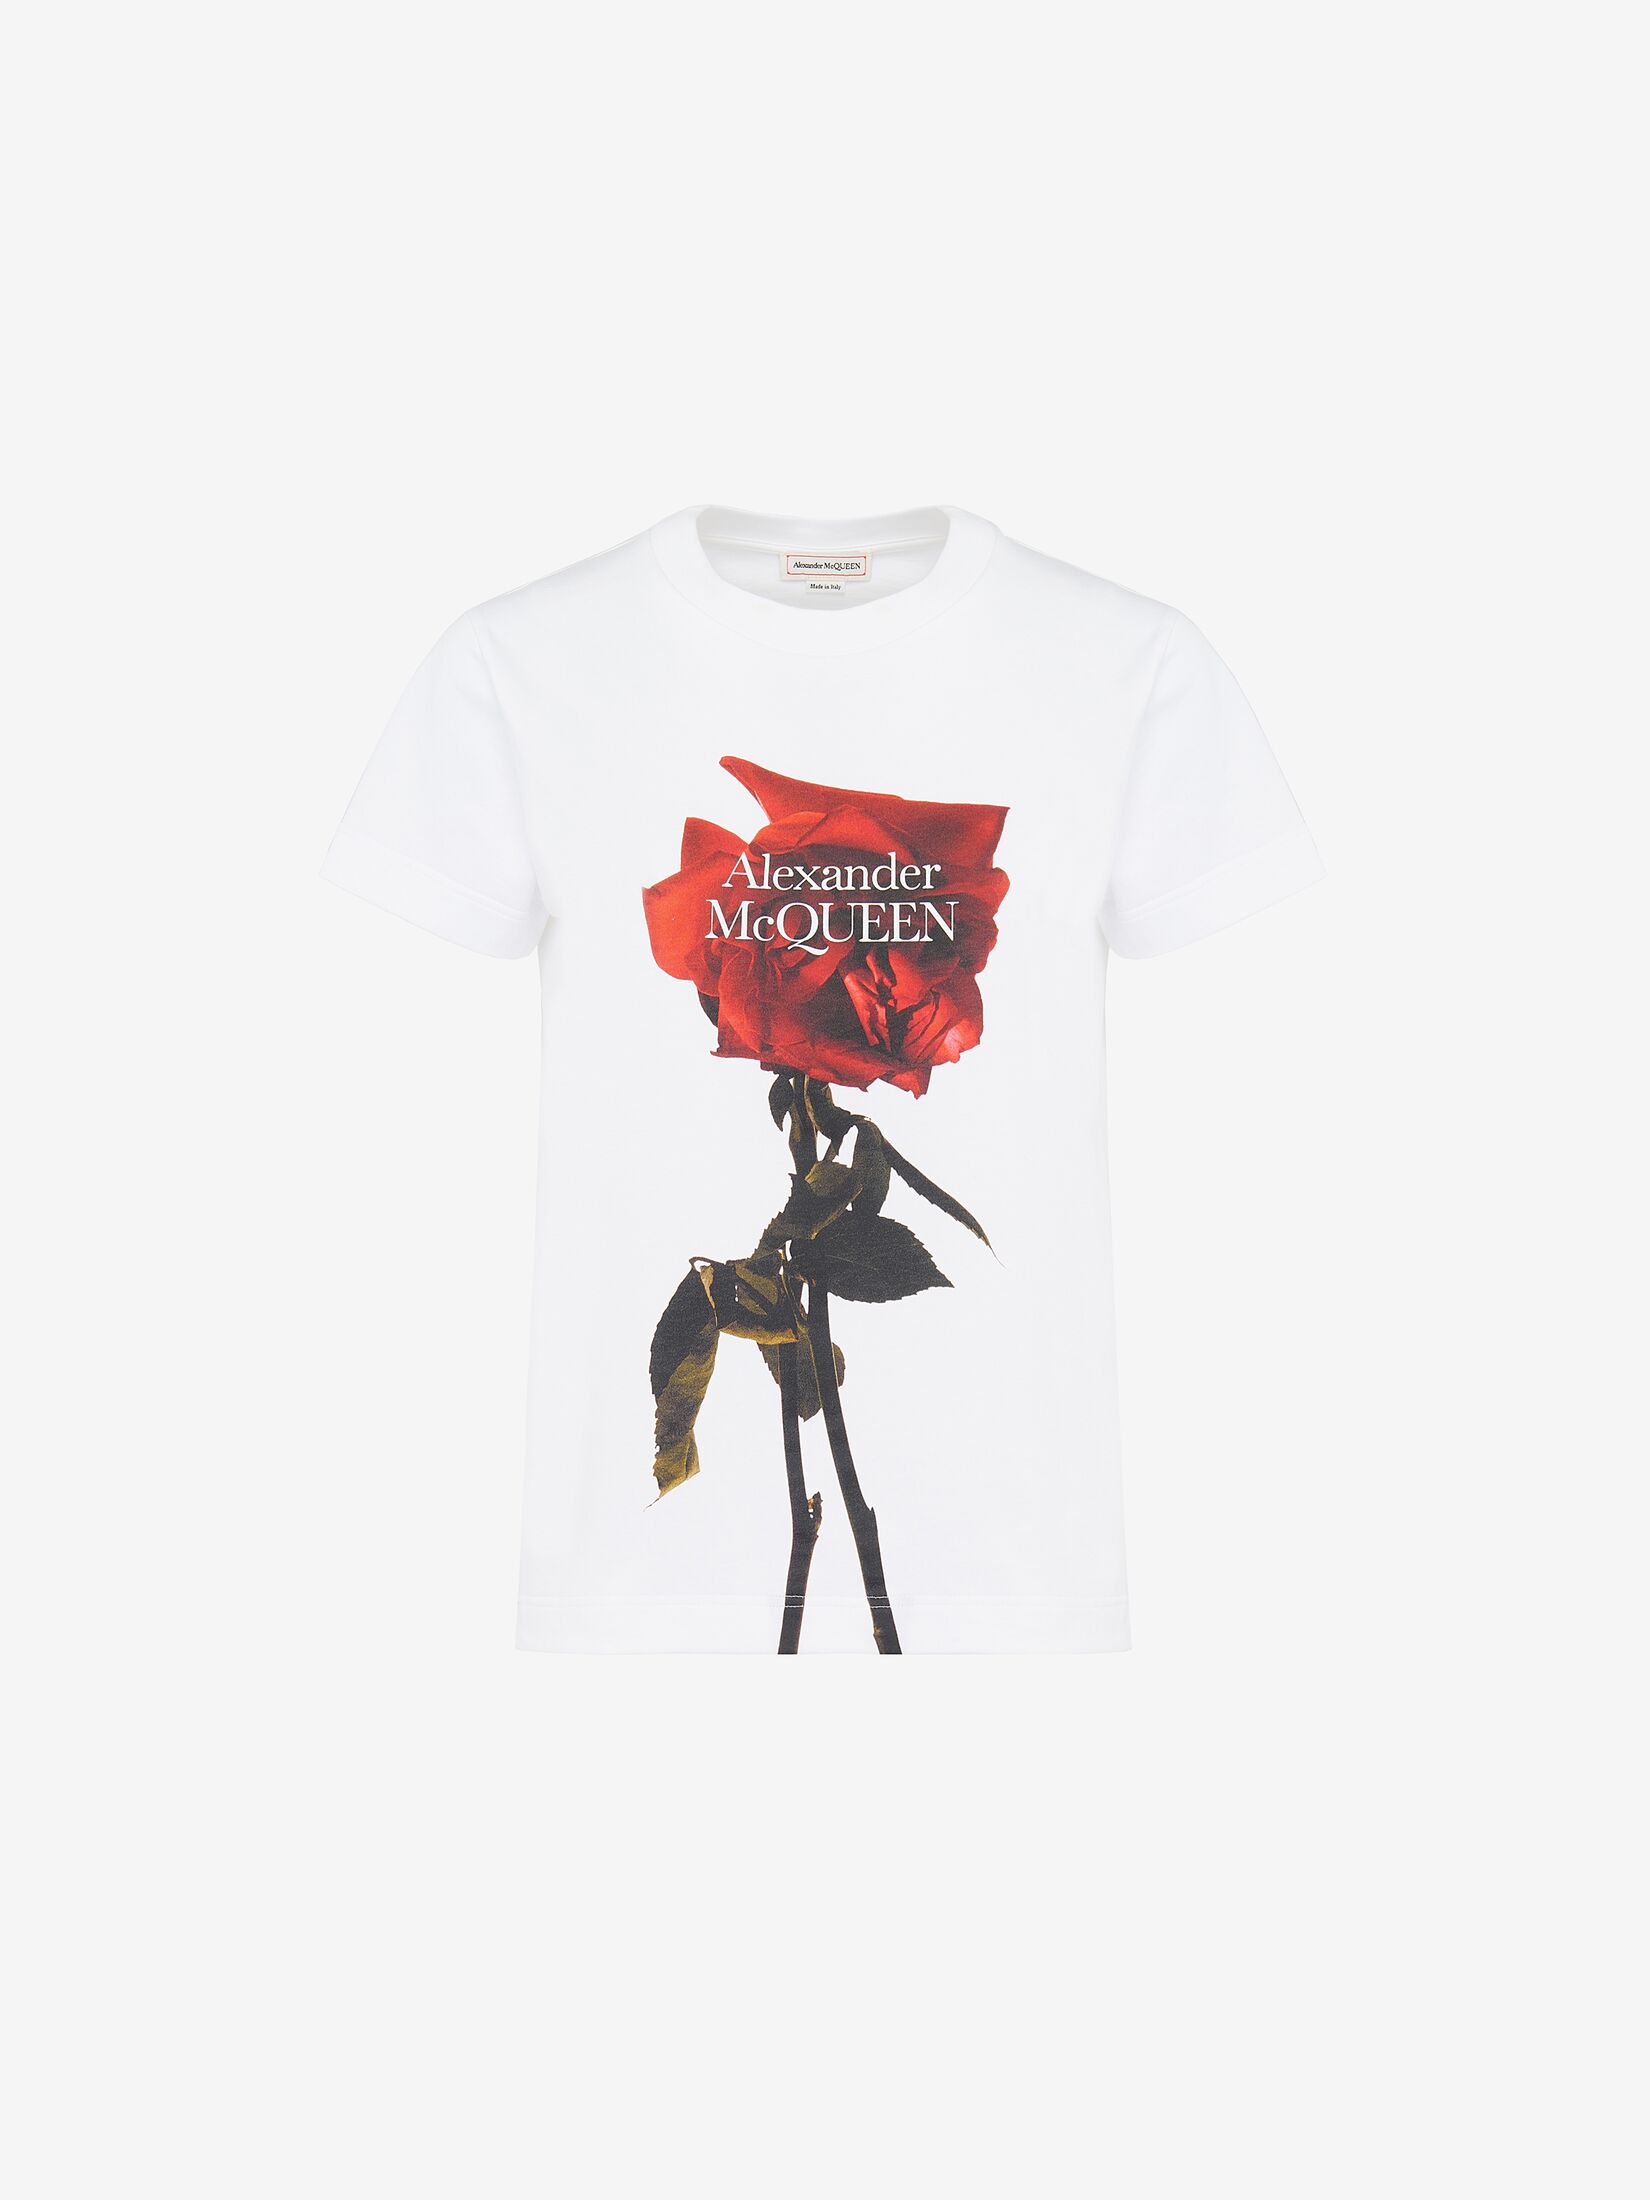 Körperbetontes T-Shirt mit Shadow Rose-Detail